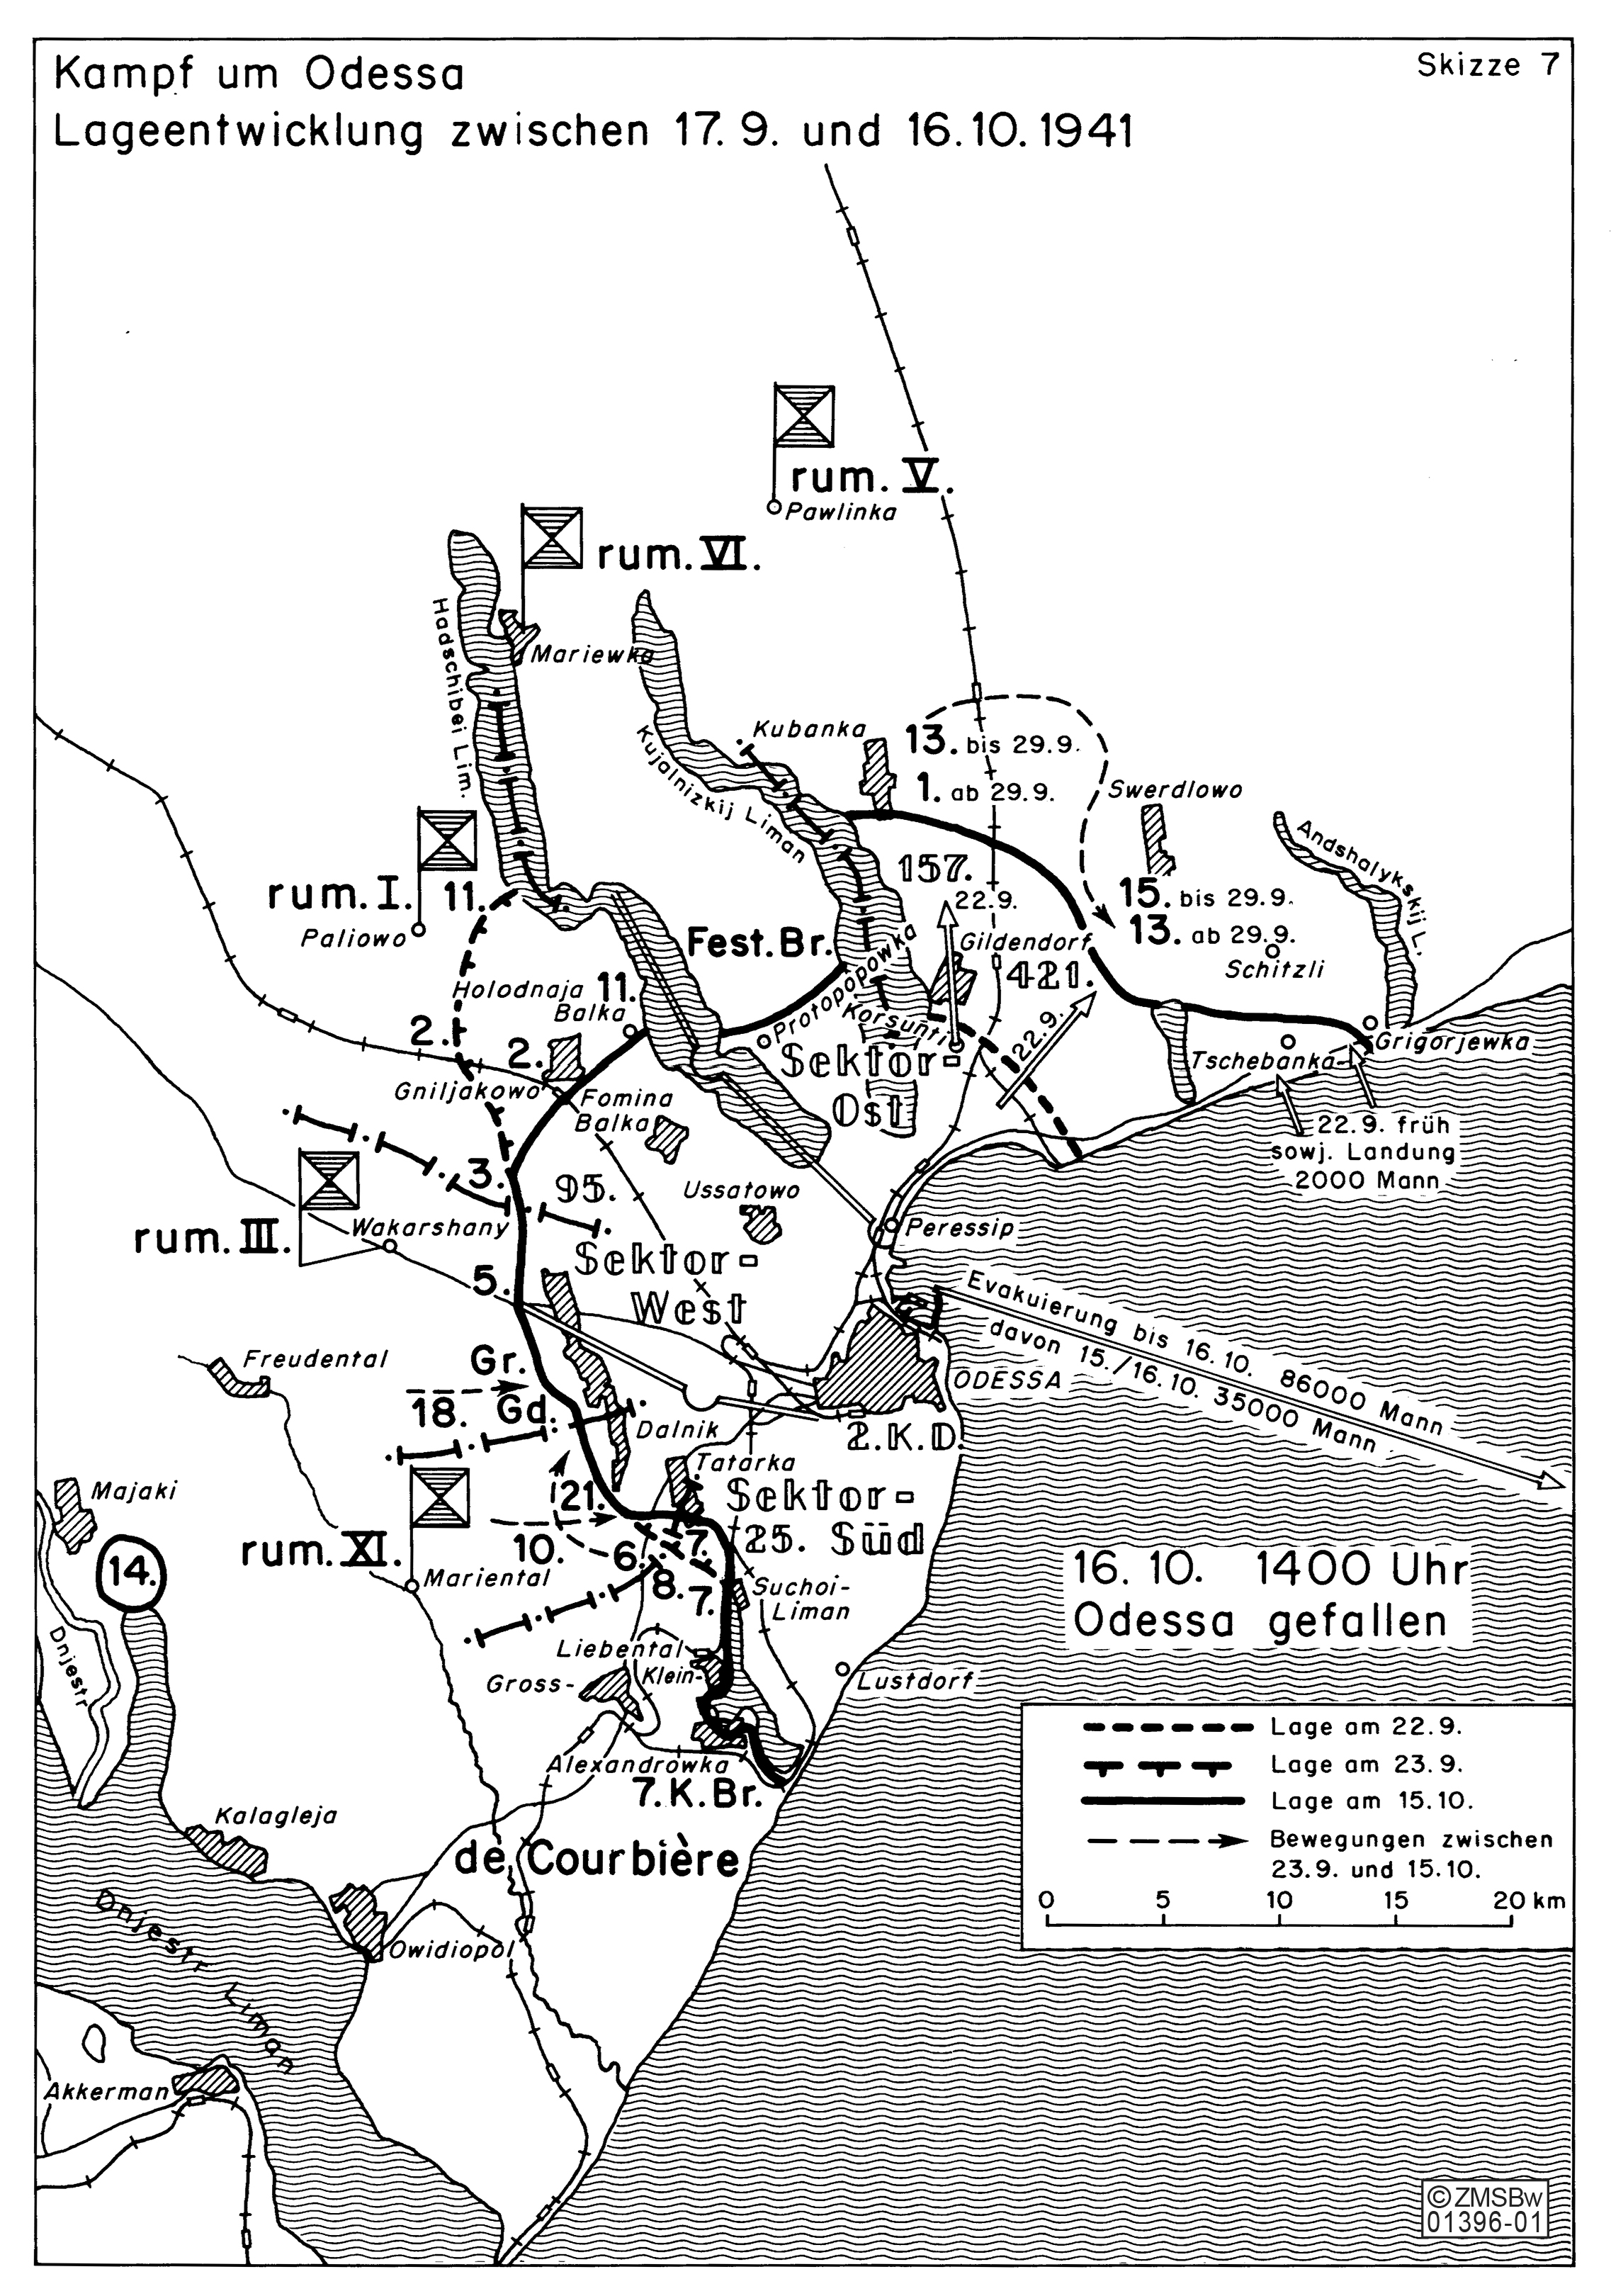 Die schwarz-weisse Karte zeigt die Lageentwicklung zwischen dem 17. September und 16. Oktober 1941 beim Kampf um Odessa.